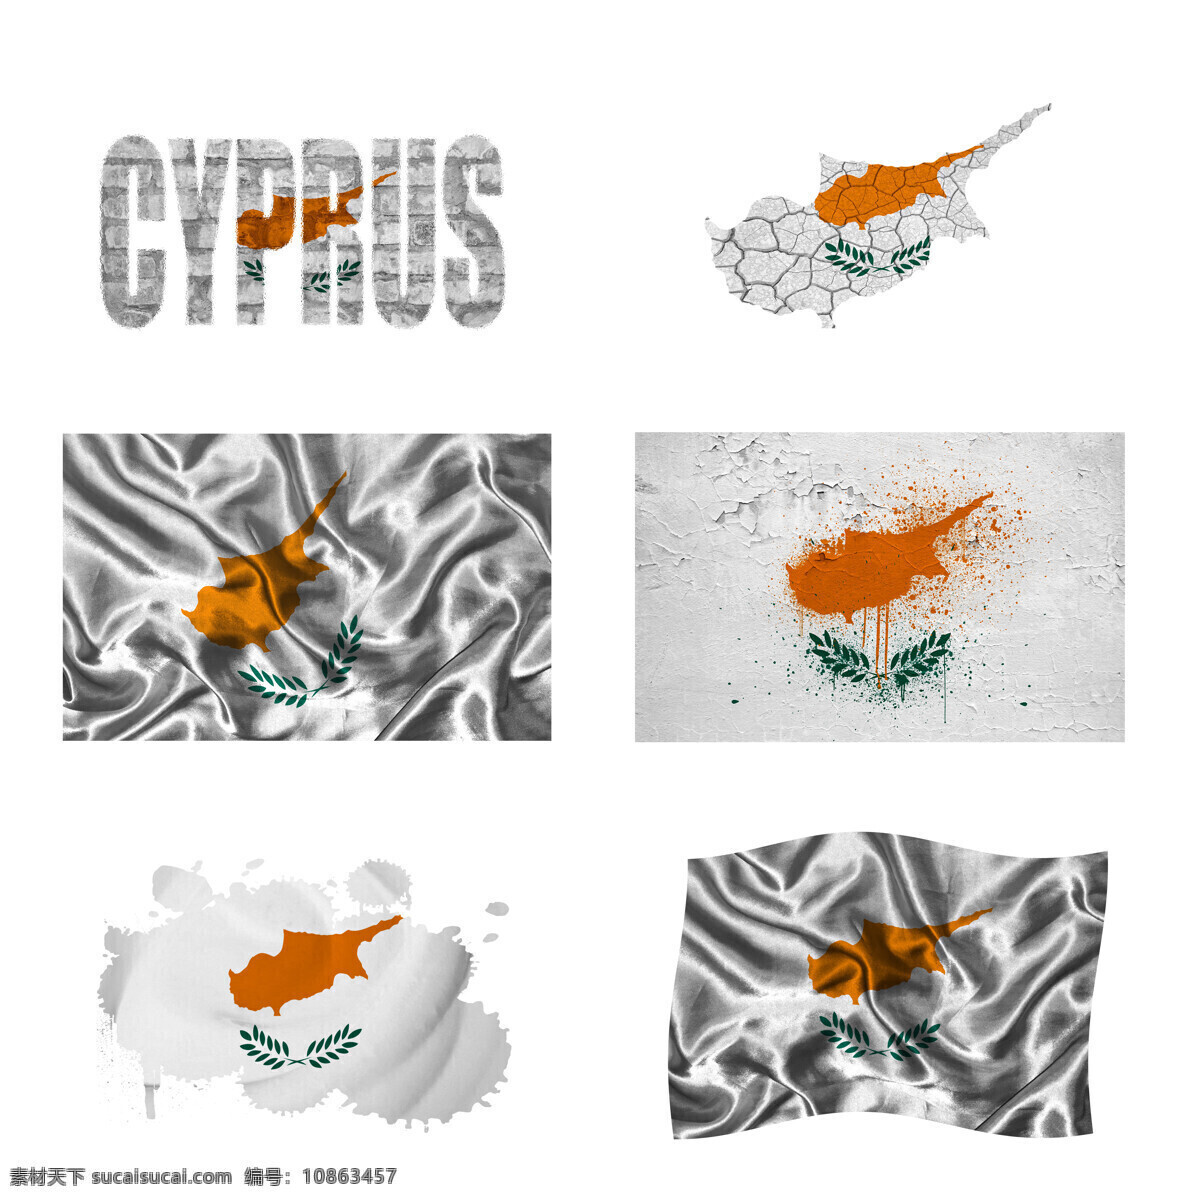 塞浦路斯 国旗 地图 塞浦路斯国旗 旗帜 国旗图案 其他类别 生活百科 白色